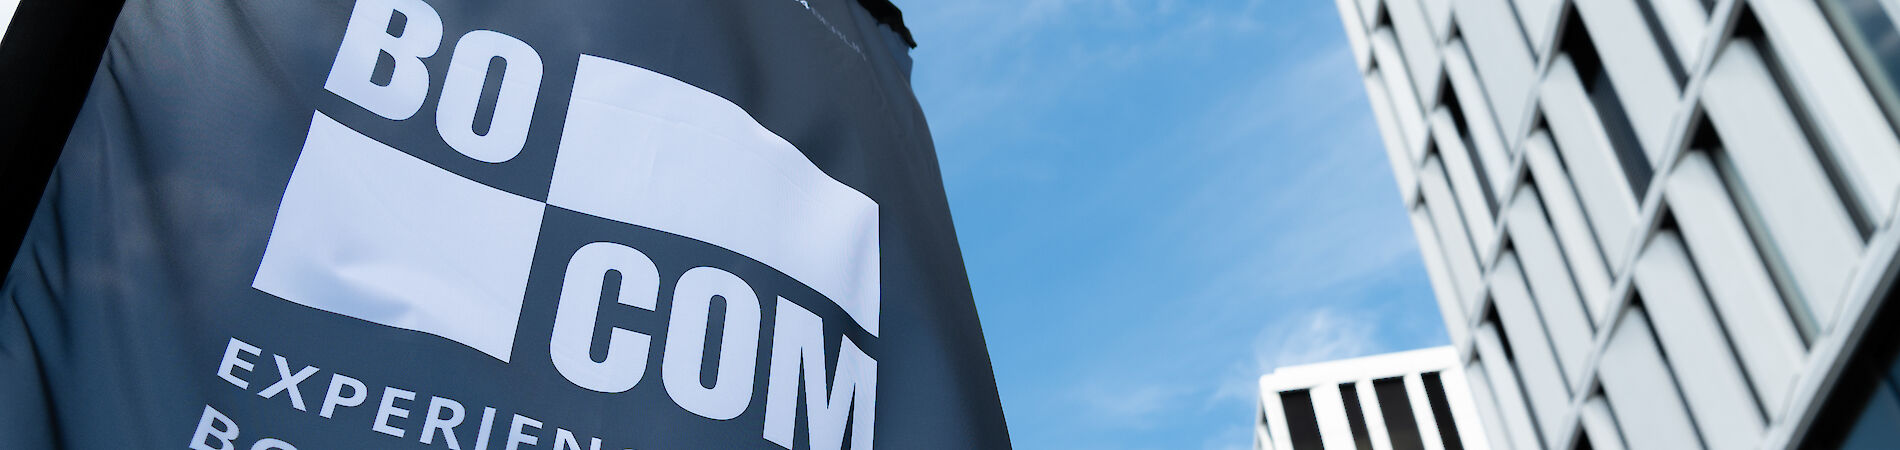 Beachflag mit Aufschrift BOCOM - Experience Borderless Communication, im Hintergrund ein Gebäude und blauer Himmel